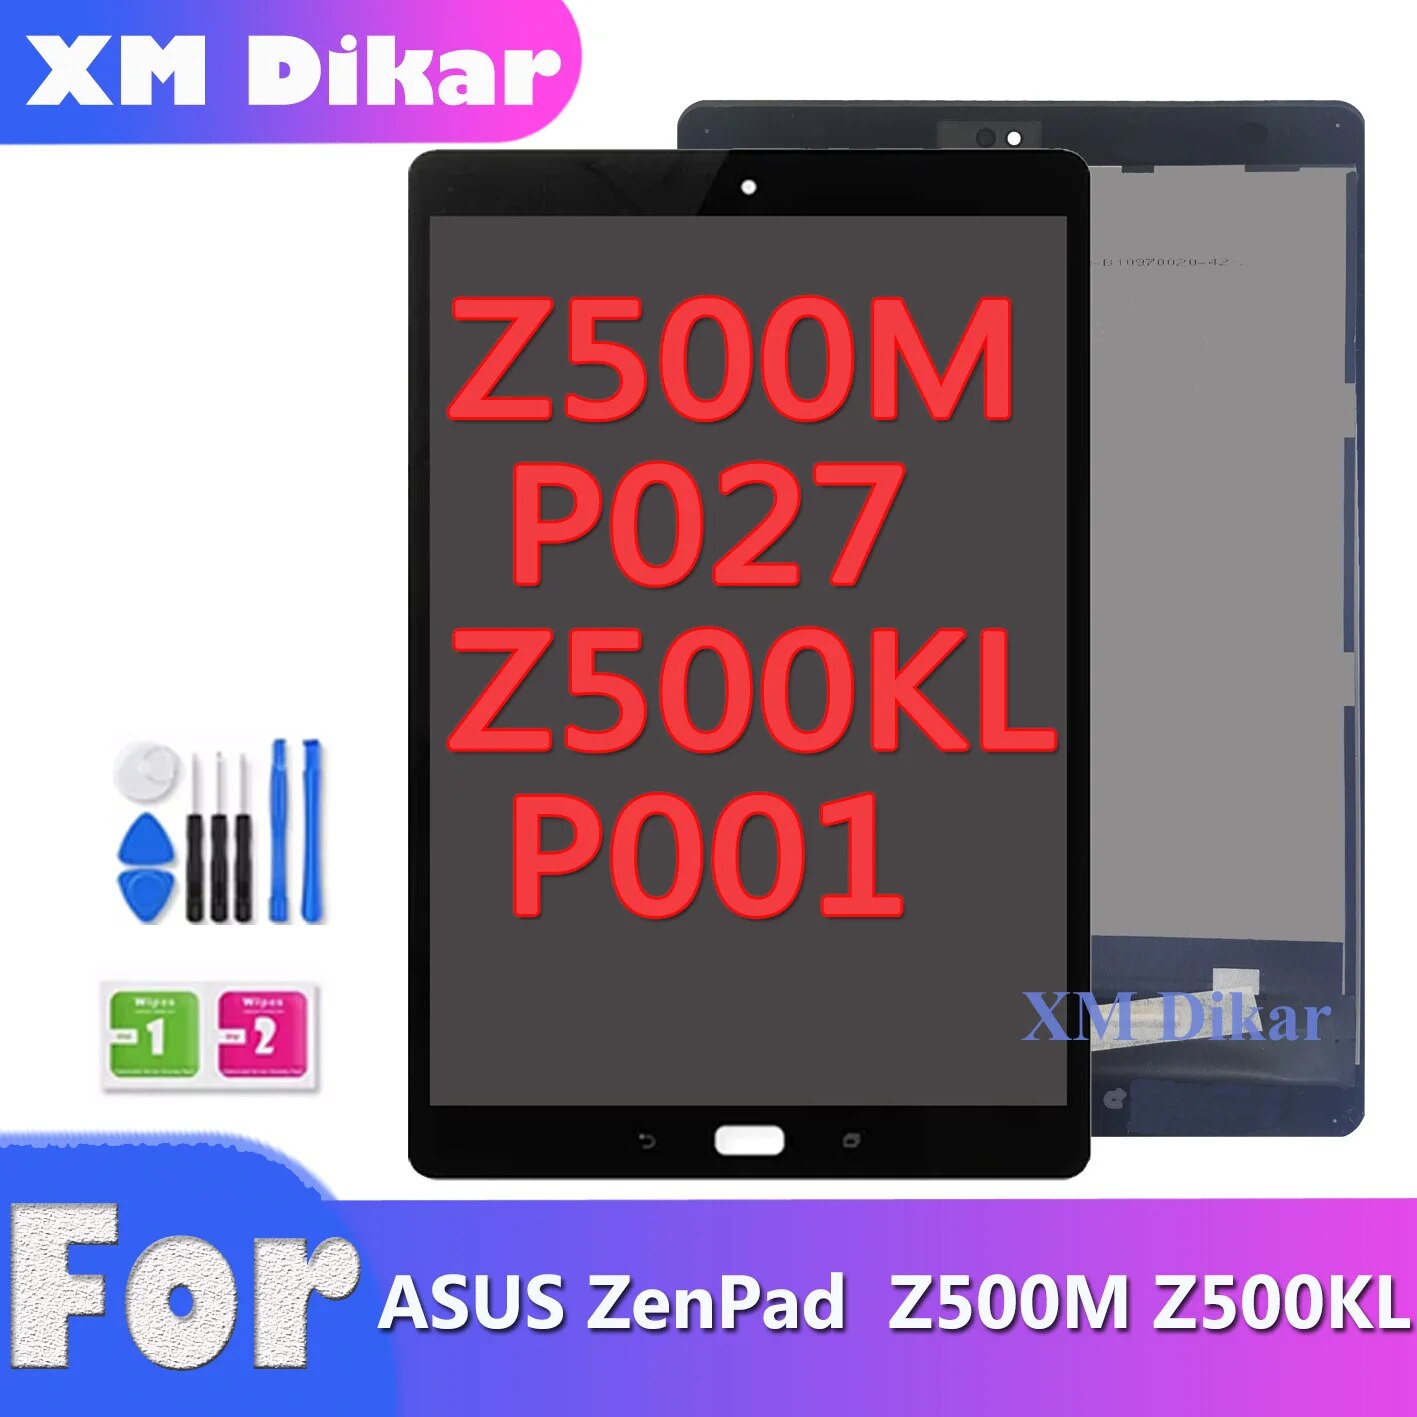 Asus Zenpad 3S 10 Z500M P027 ũ Z500KL P001 Z500 LCD ÷ ġ ũ Ÿ  ü  LCD, ǰ